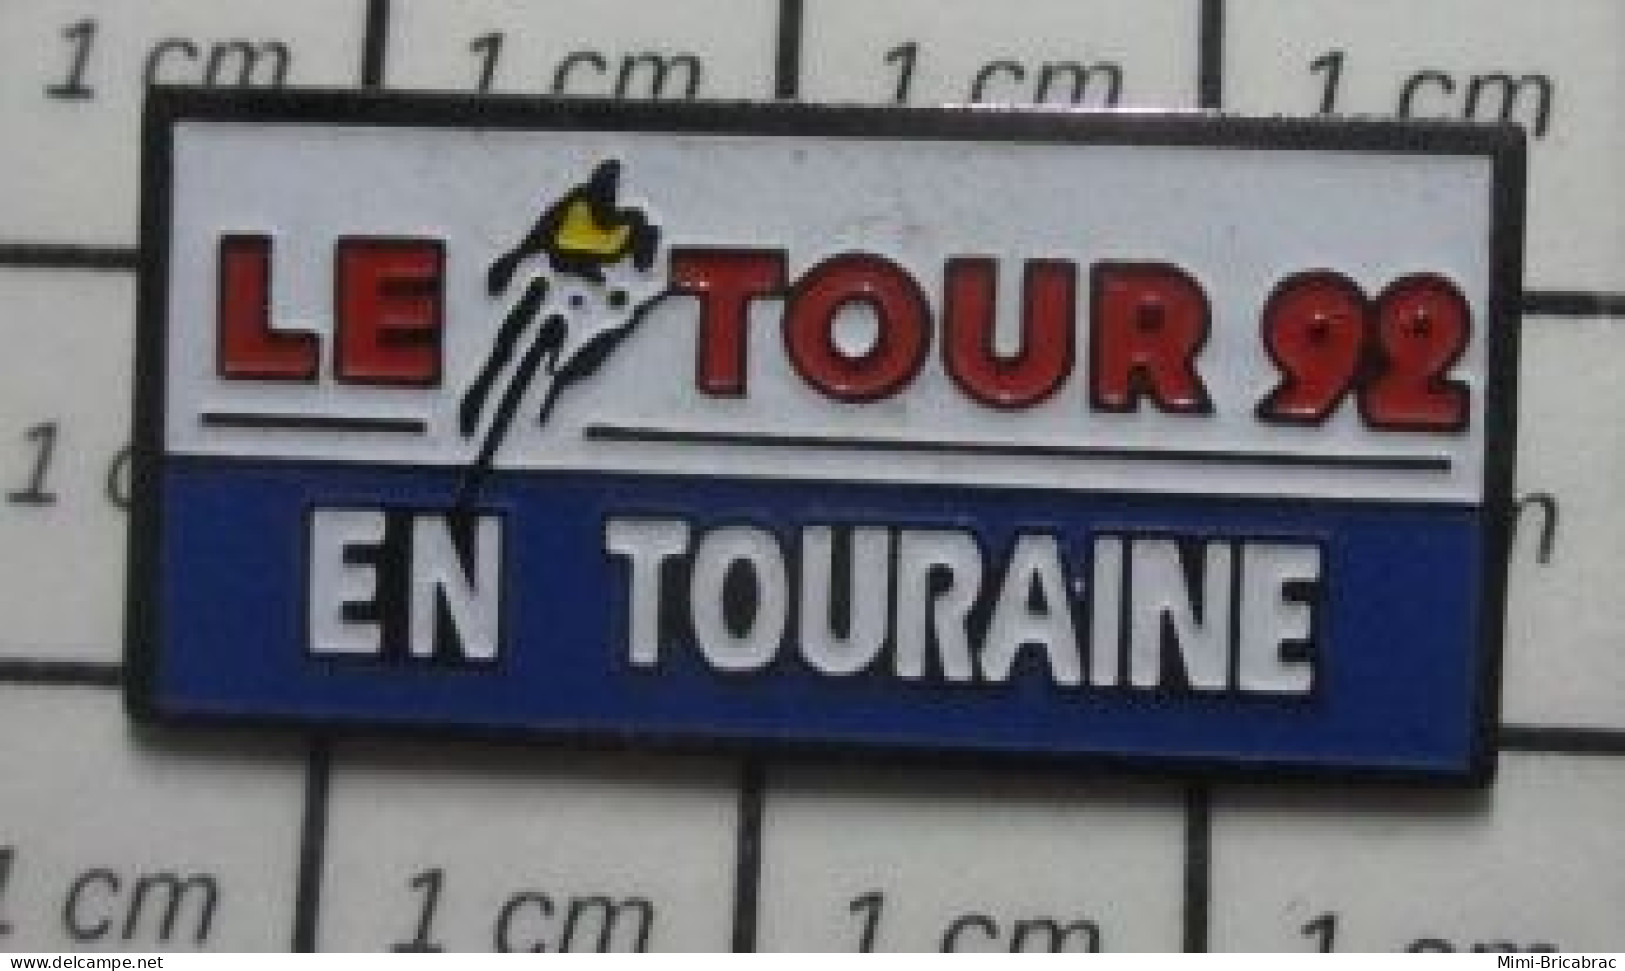 3417  Pin's Pins / Beau Et Rare / SPORTS / CYCLIMSE TOUR DE FRANCE 92 EN TOURAINE - Radsport